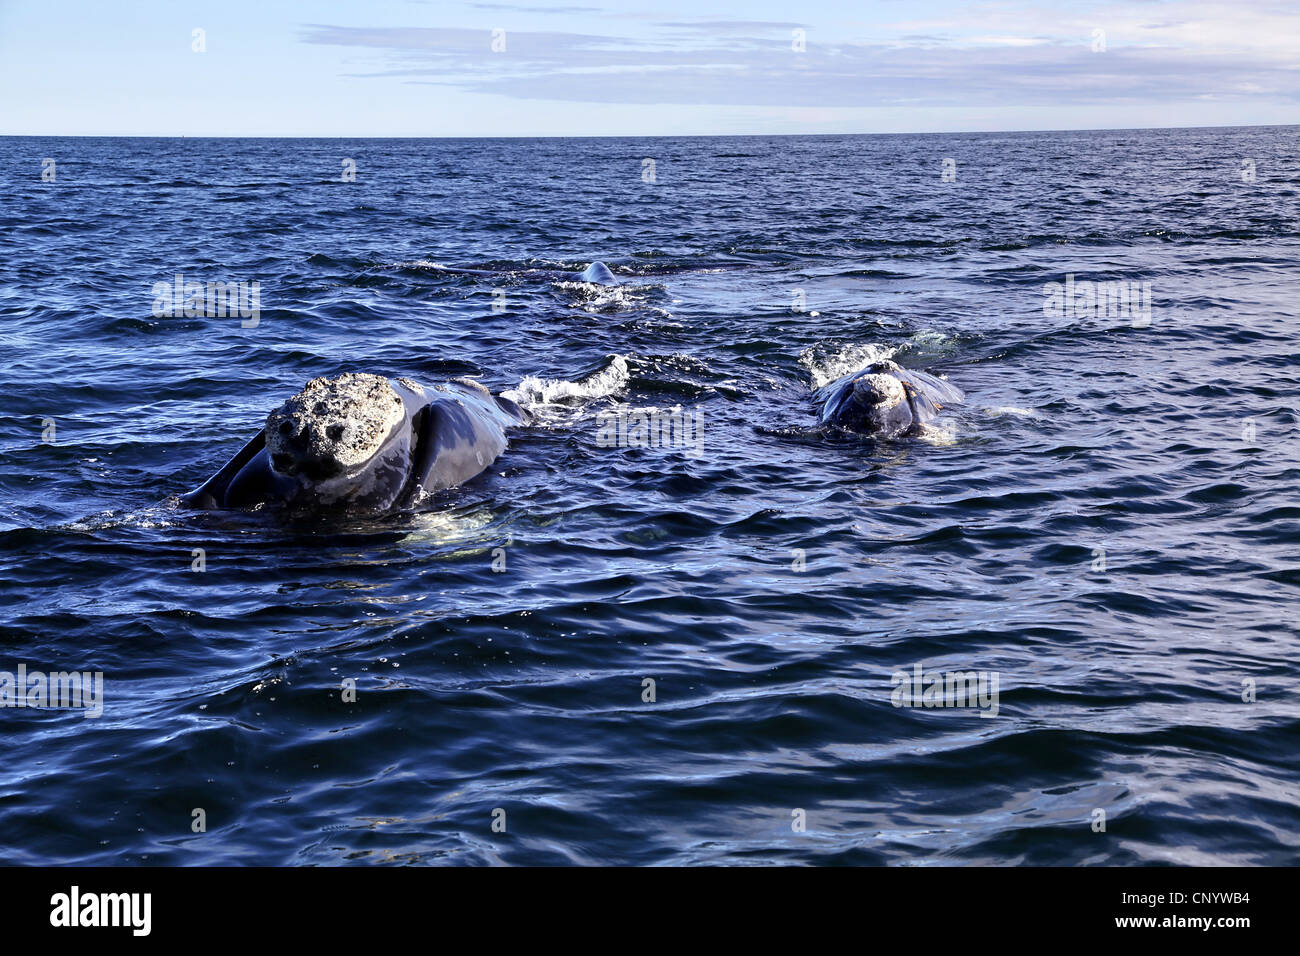 southern right whale (Eubalaena australis, Balaena glacialis australis), in the sea, Argentina, Peninsula Valdes Stock Photo